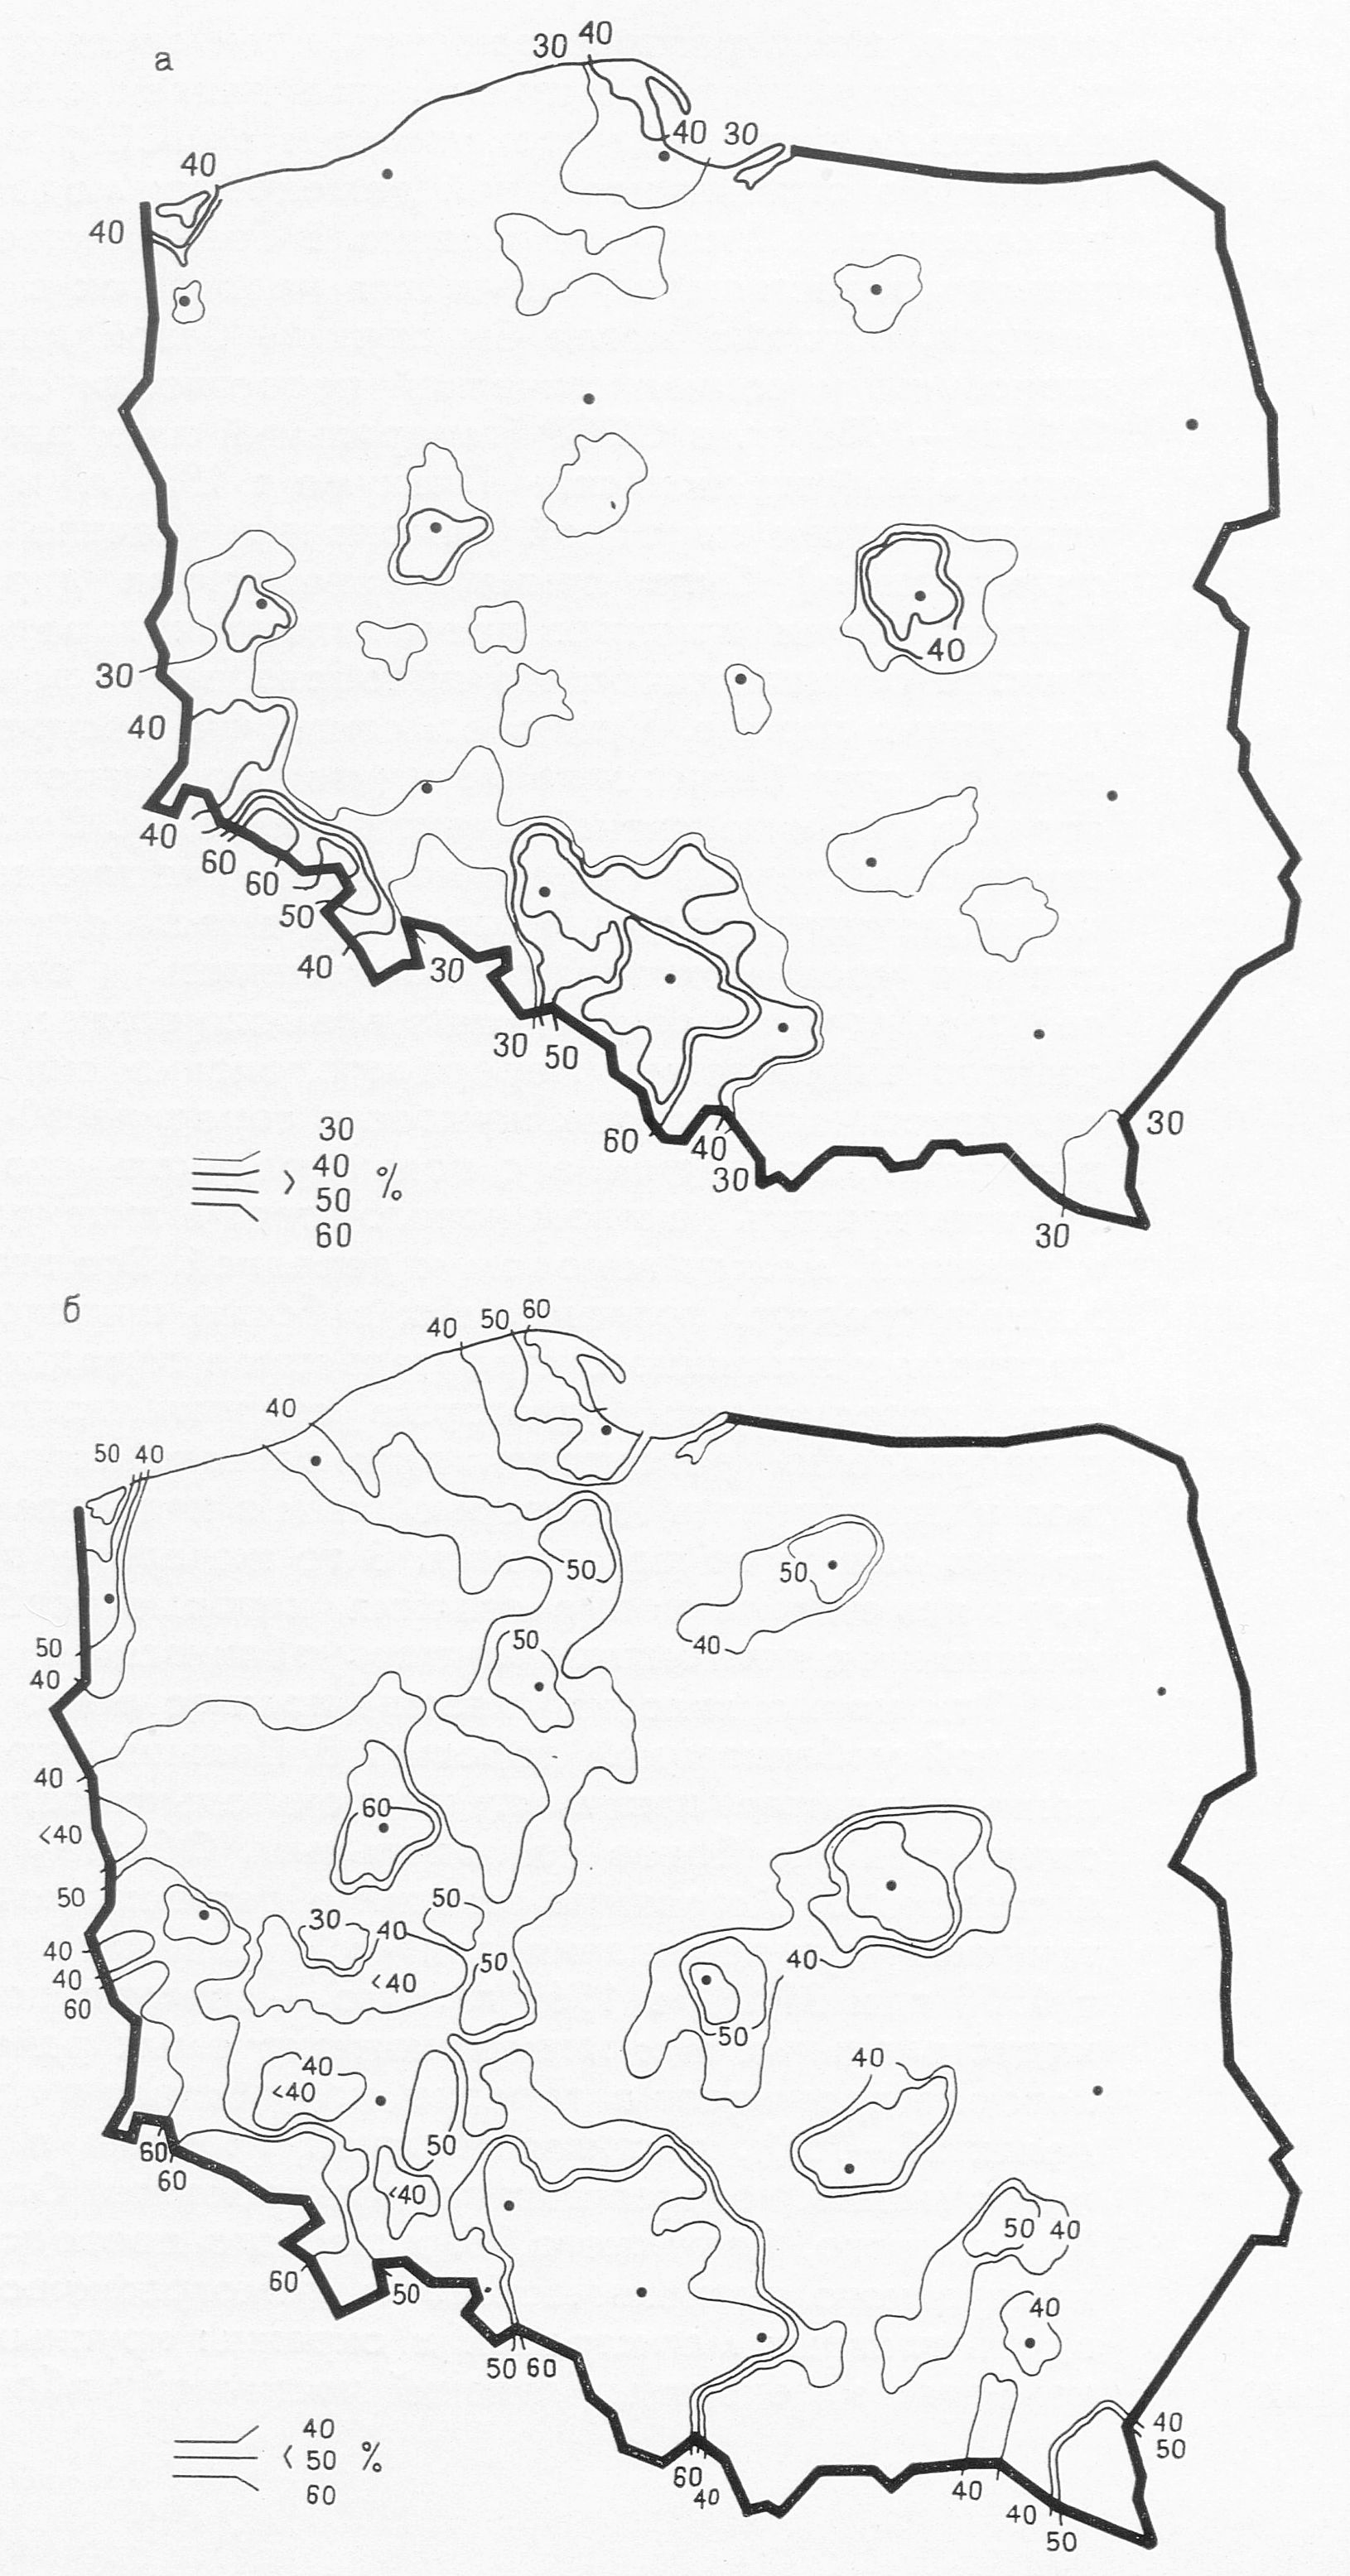 Размещение несельского населения в польской деревне в 1960 г. Изолинии соединяют сельские местности (зоны), где проживает 30—60% несельского населения